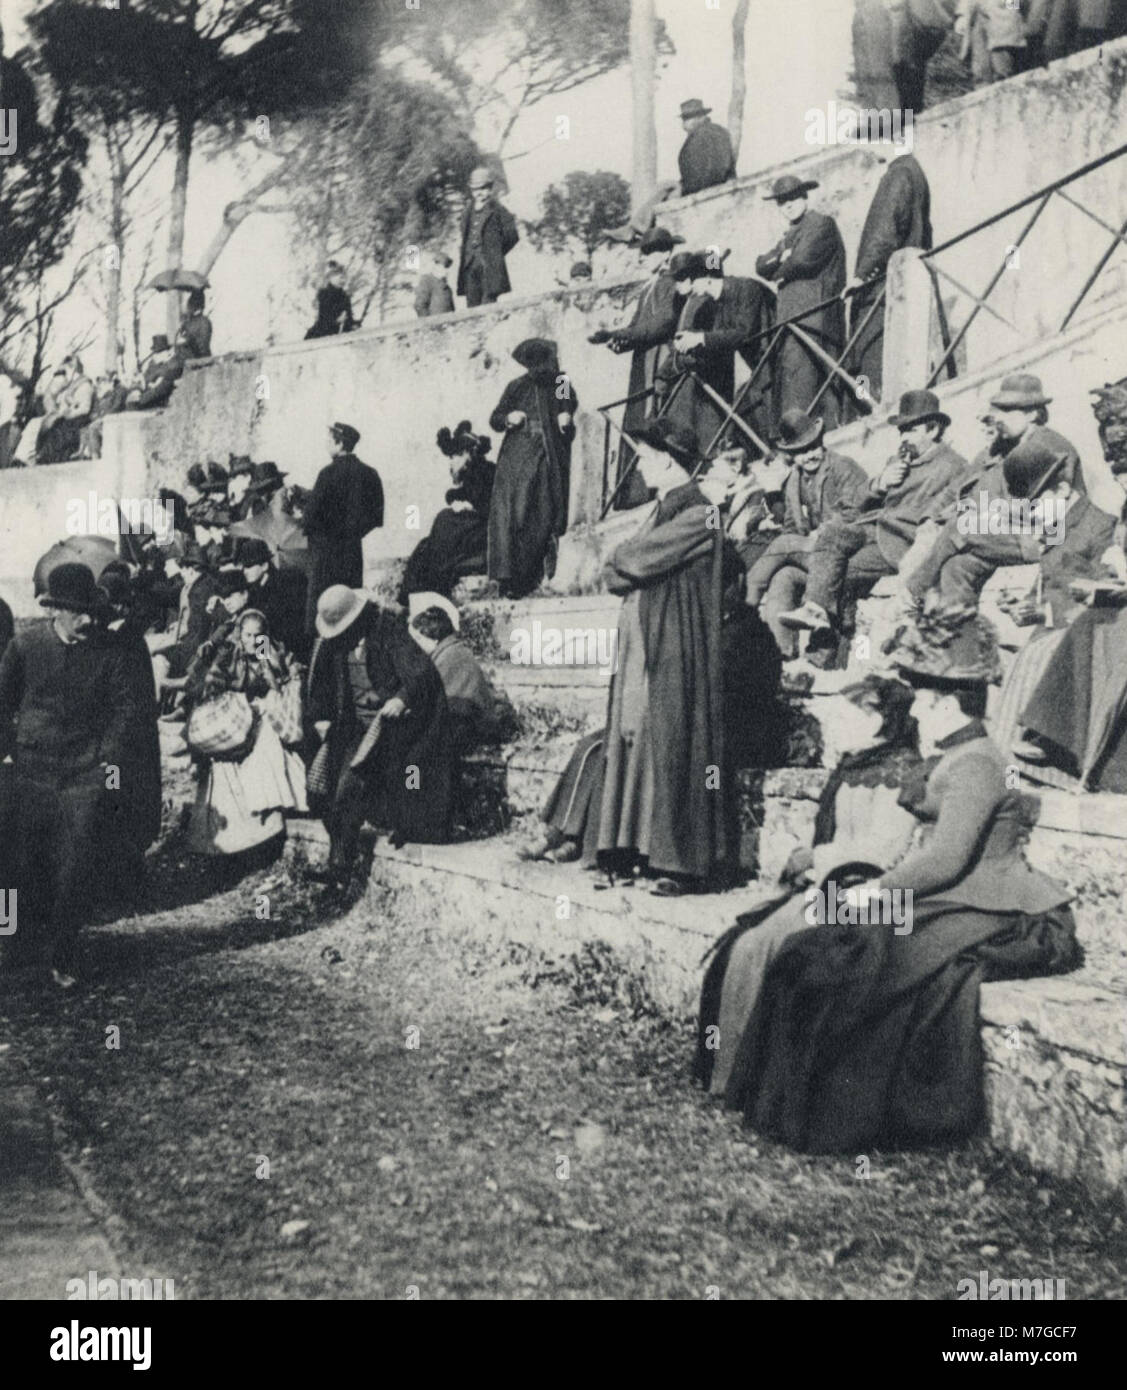 Primoli, Giuseppe - Frauen und Priester in der Sonne auf der Piazza di Siena (Zeno Fotografie) Stock Photo